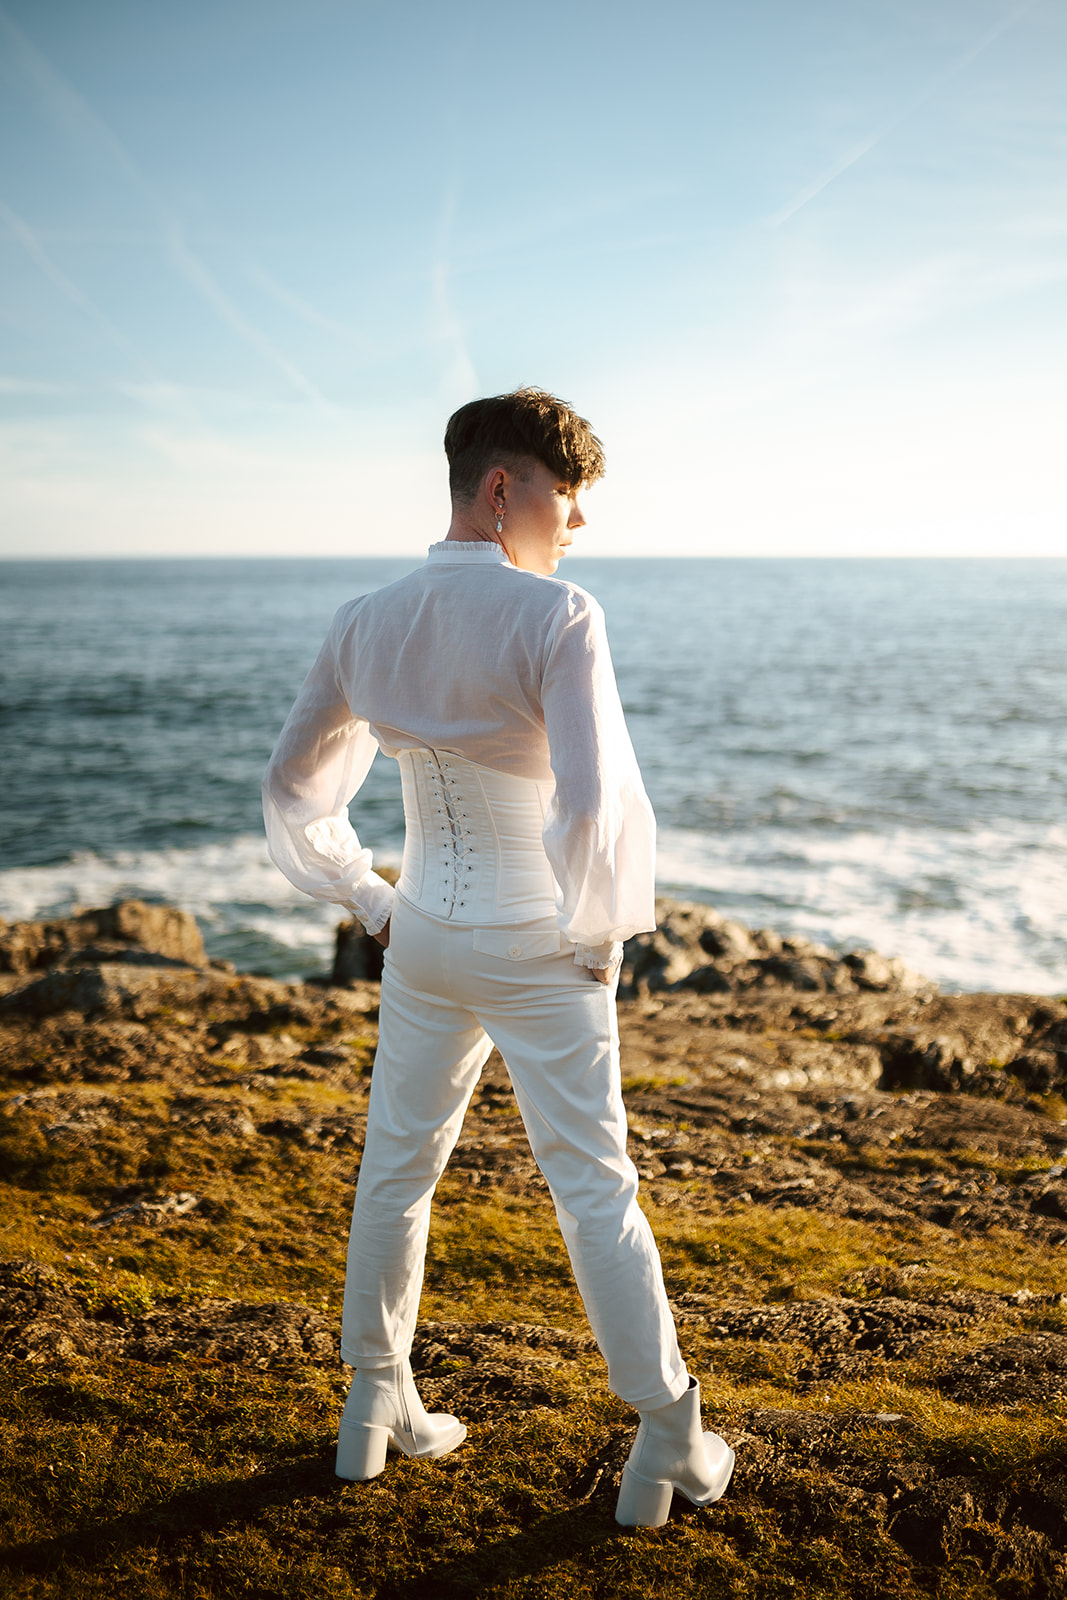 Homme portant un costume de mariage avec corset sur-mesure en bord de mer.